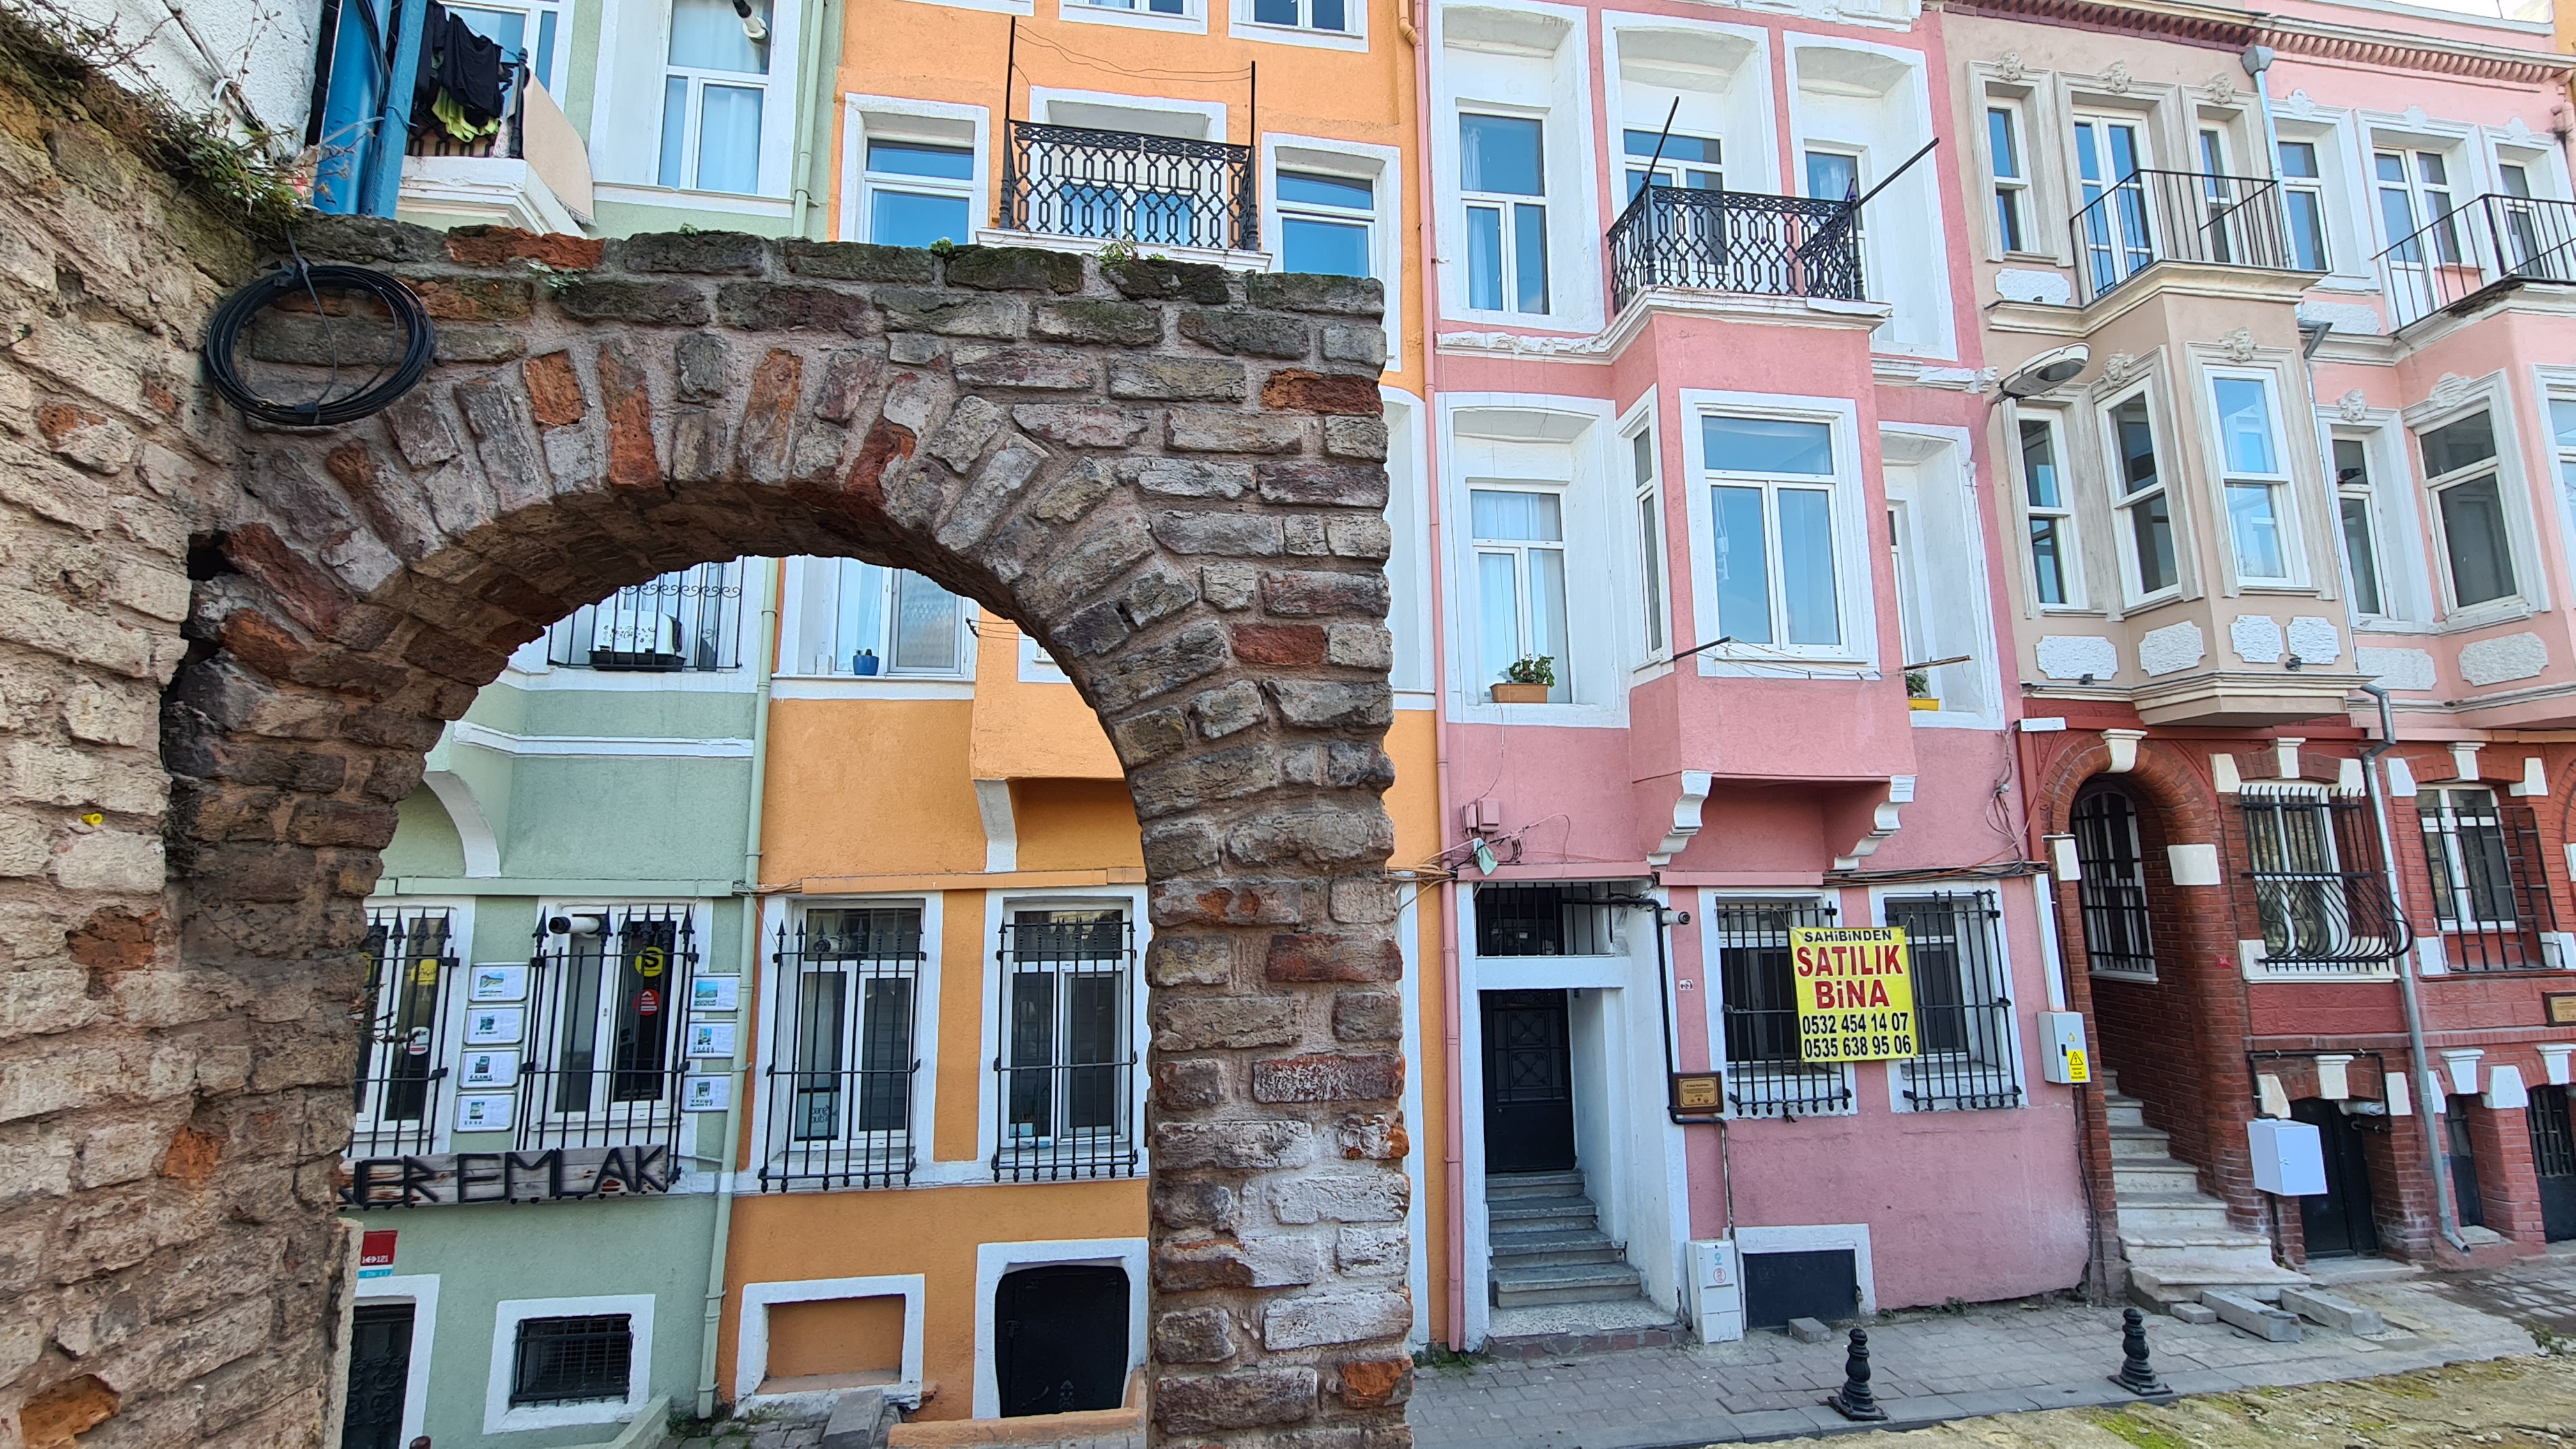 Fener, the Greek neighborhood of Istanbul